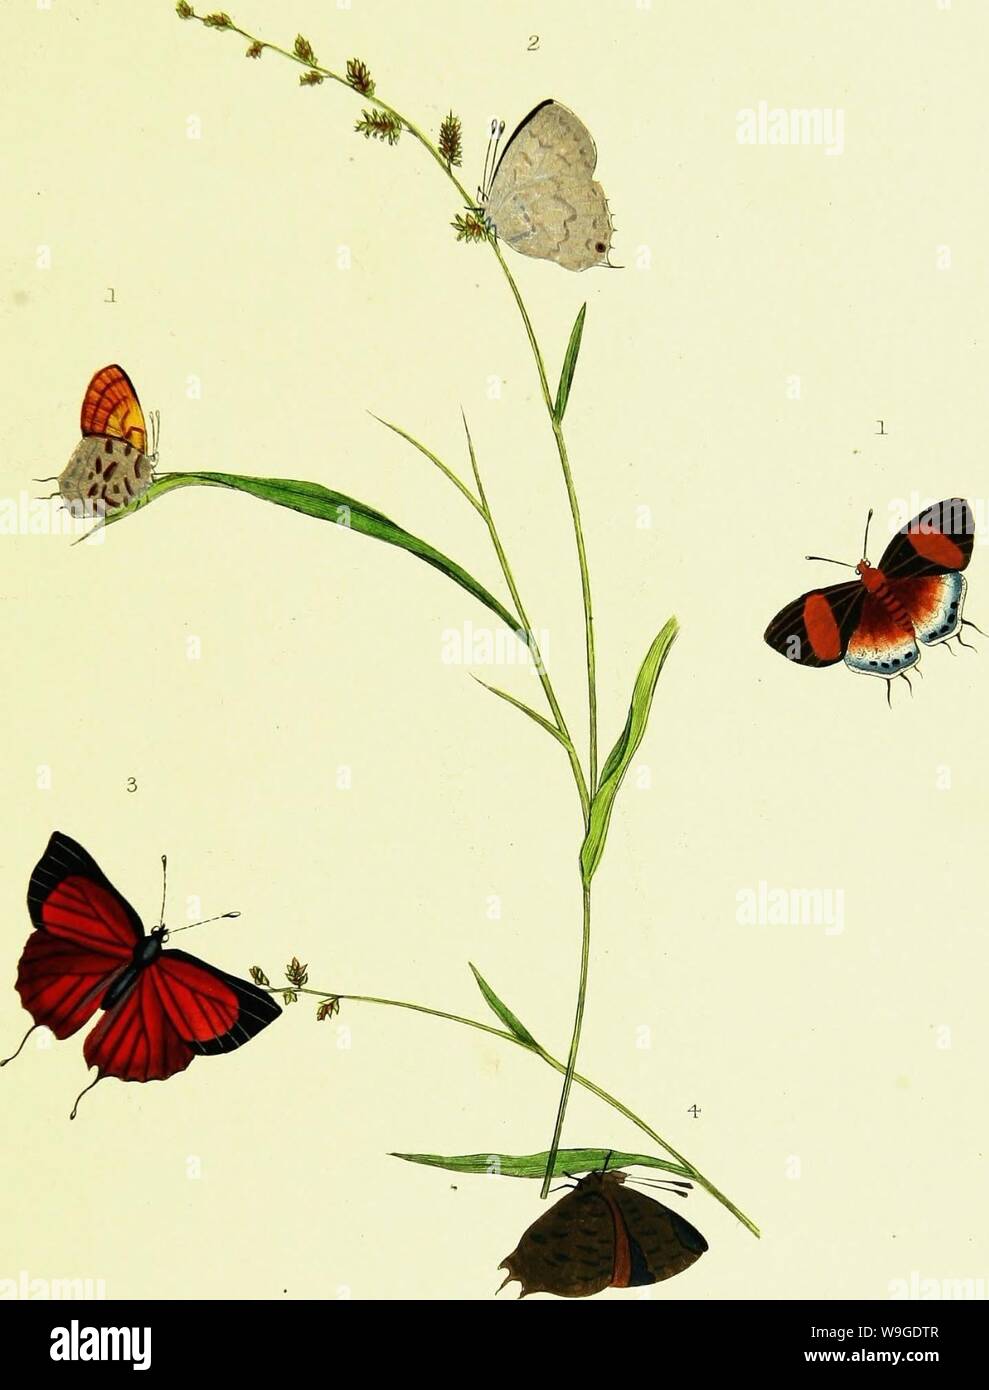 Immagine di archivio da pagina 192 di storia naturale degli insetti. Storia naturale degli insetti dell India, contenente verso l'alto di duecento e venti le figure e le descrizioni CUbiodiversity1121838 Anno: 1842 ( PL XL /?". Z&yui -./ /J///J // / r / // / J. GsweC'UFR ///"7 vV,/ }//?&lt;y/(7 Y/M/ej Foto Stock